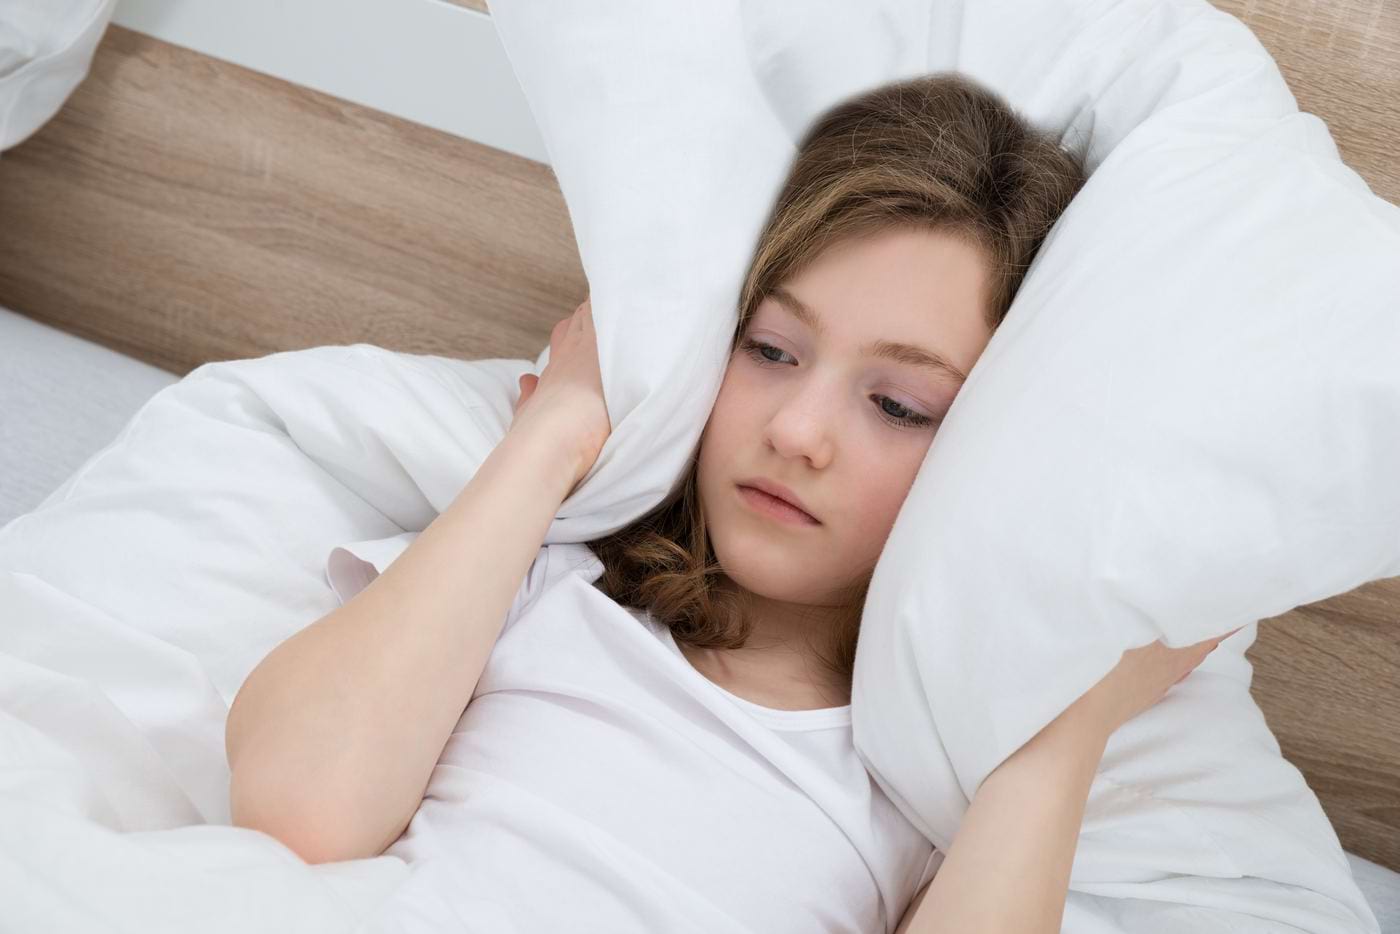 Problemele de somn la sugar pot semnala tulburări mentale ca adolescenți [studiu]